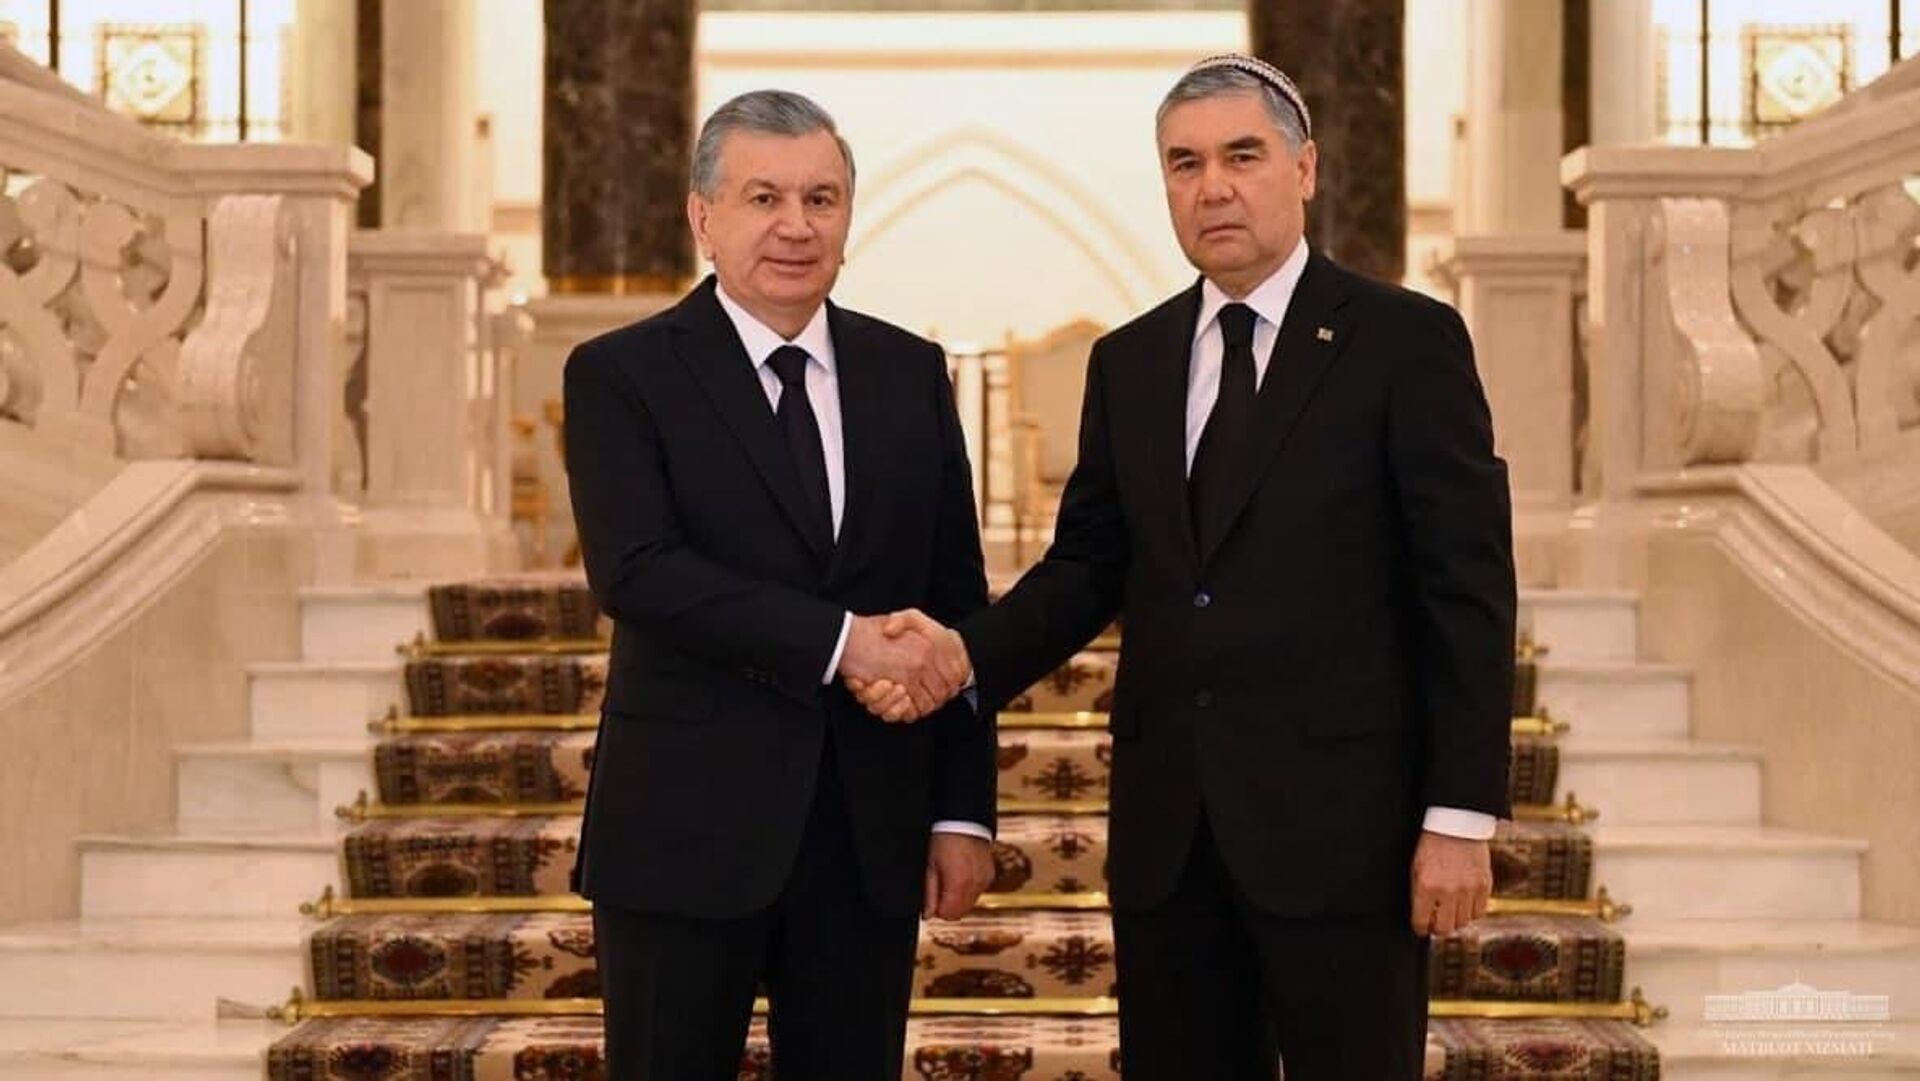 Шавкат Мирзиёев и Гурбангулы Бердымухамедов в Ашхабаде, 29 апреля 2021 года - Sputnik Узбекистан, 1920, 29.04.2021